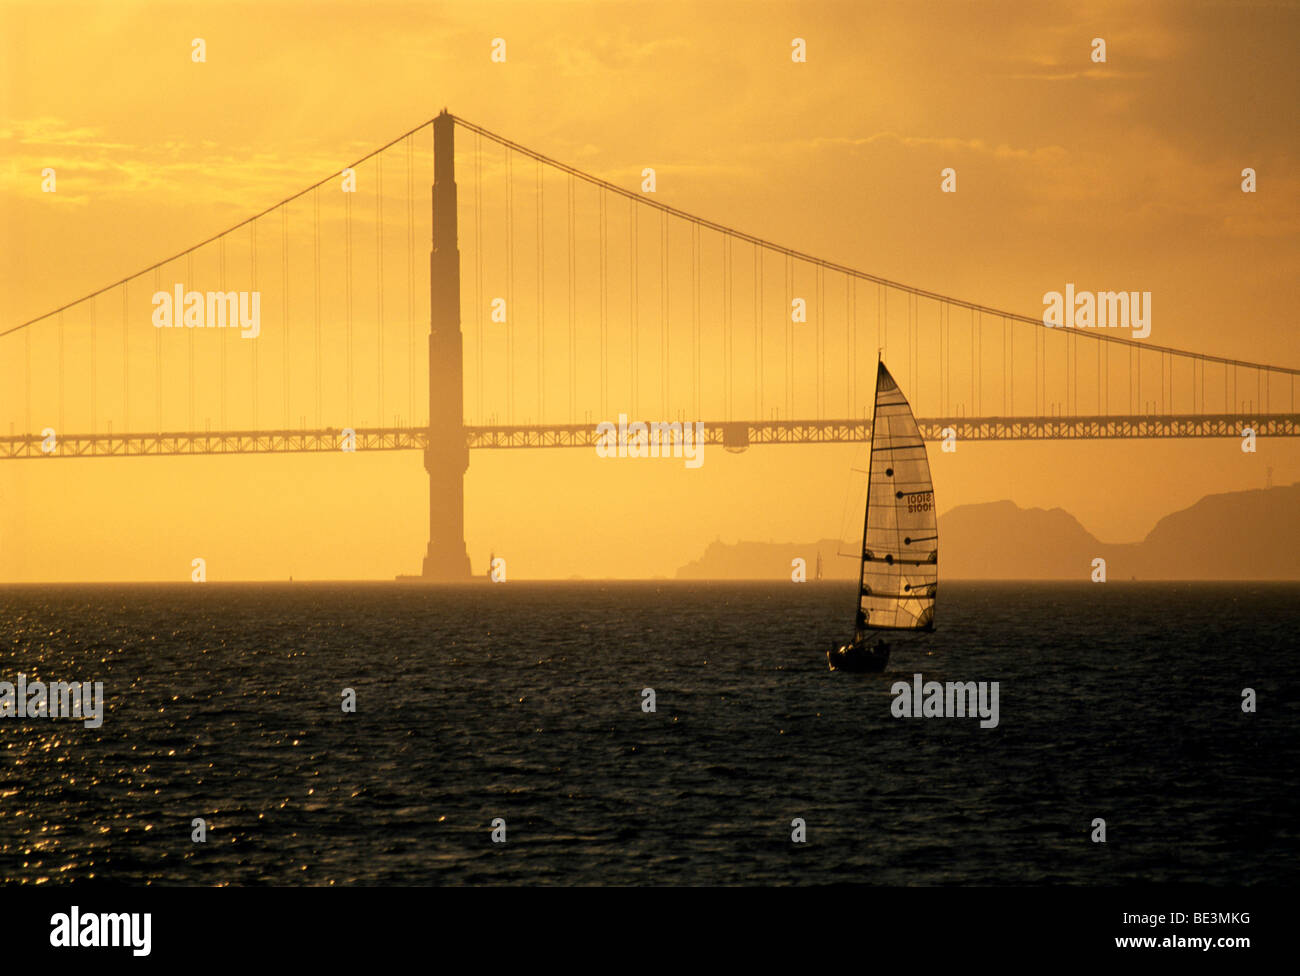 Le Golden Gate Bridge, California, USA Banque D'Images